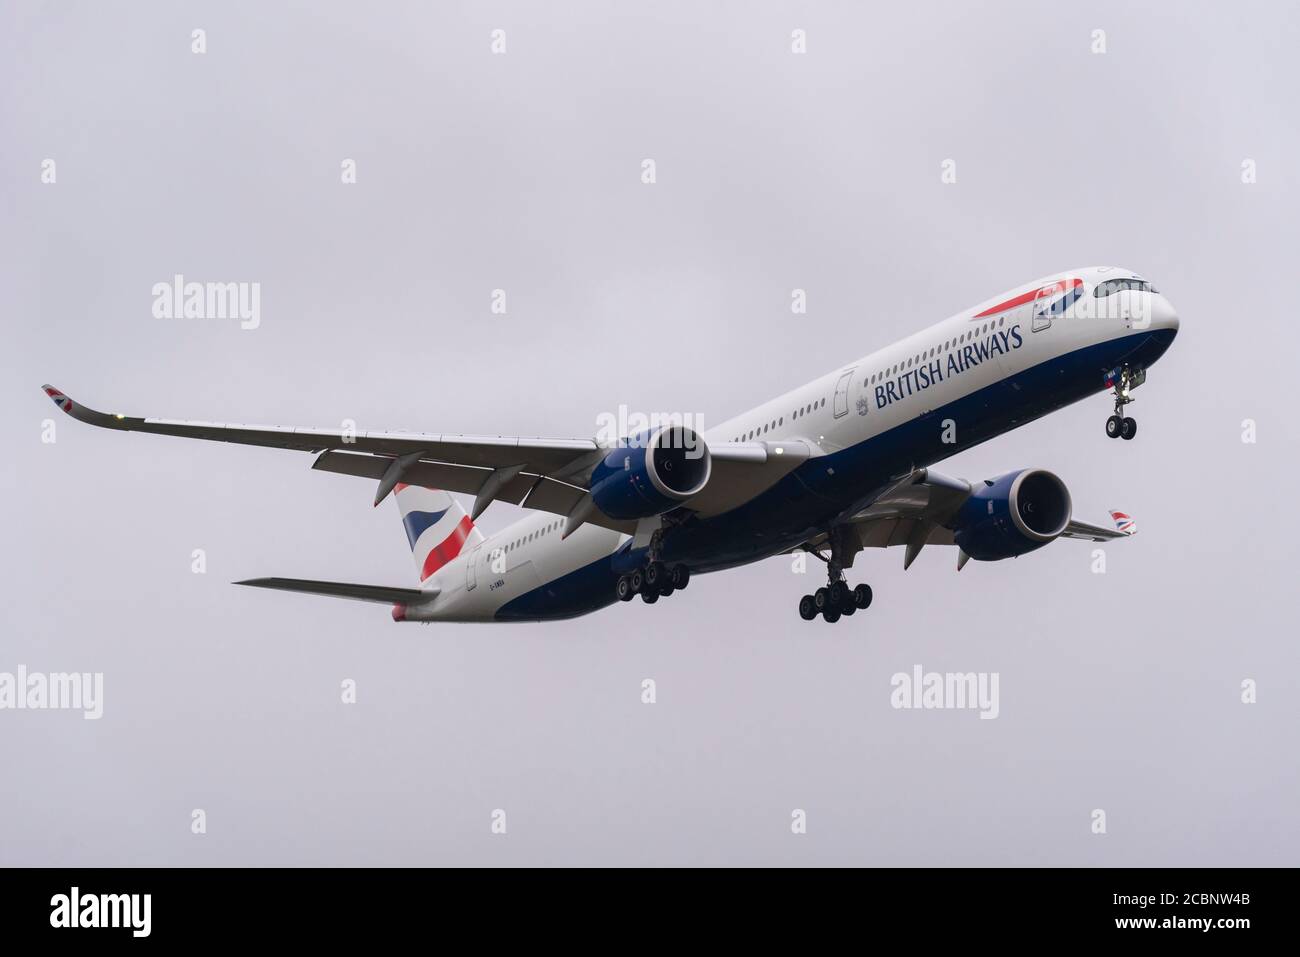 British Airways Airbus A350 Jet-Linienflugzeug G-XWBA landete am Flughafen London Heathrow, Großbritannien, während der COVID-19 Coronavirus-Pandemie. Stockfoto